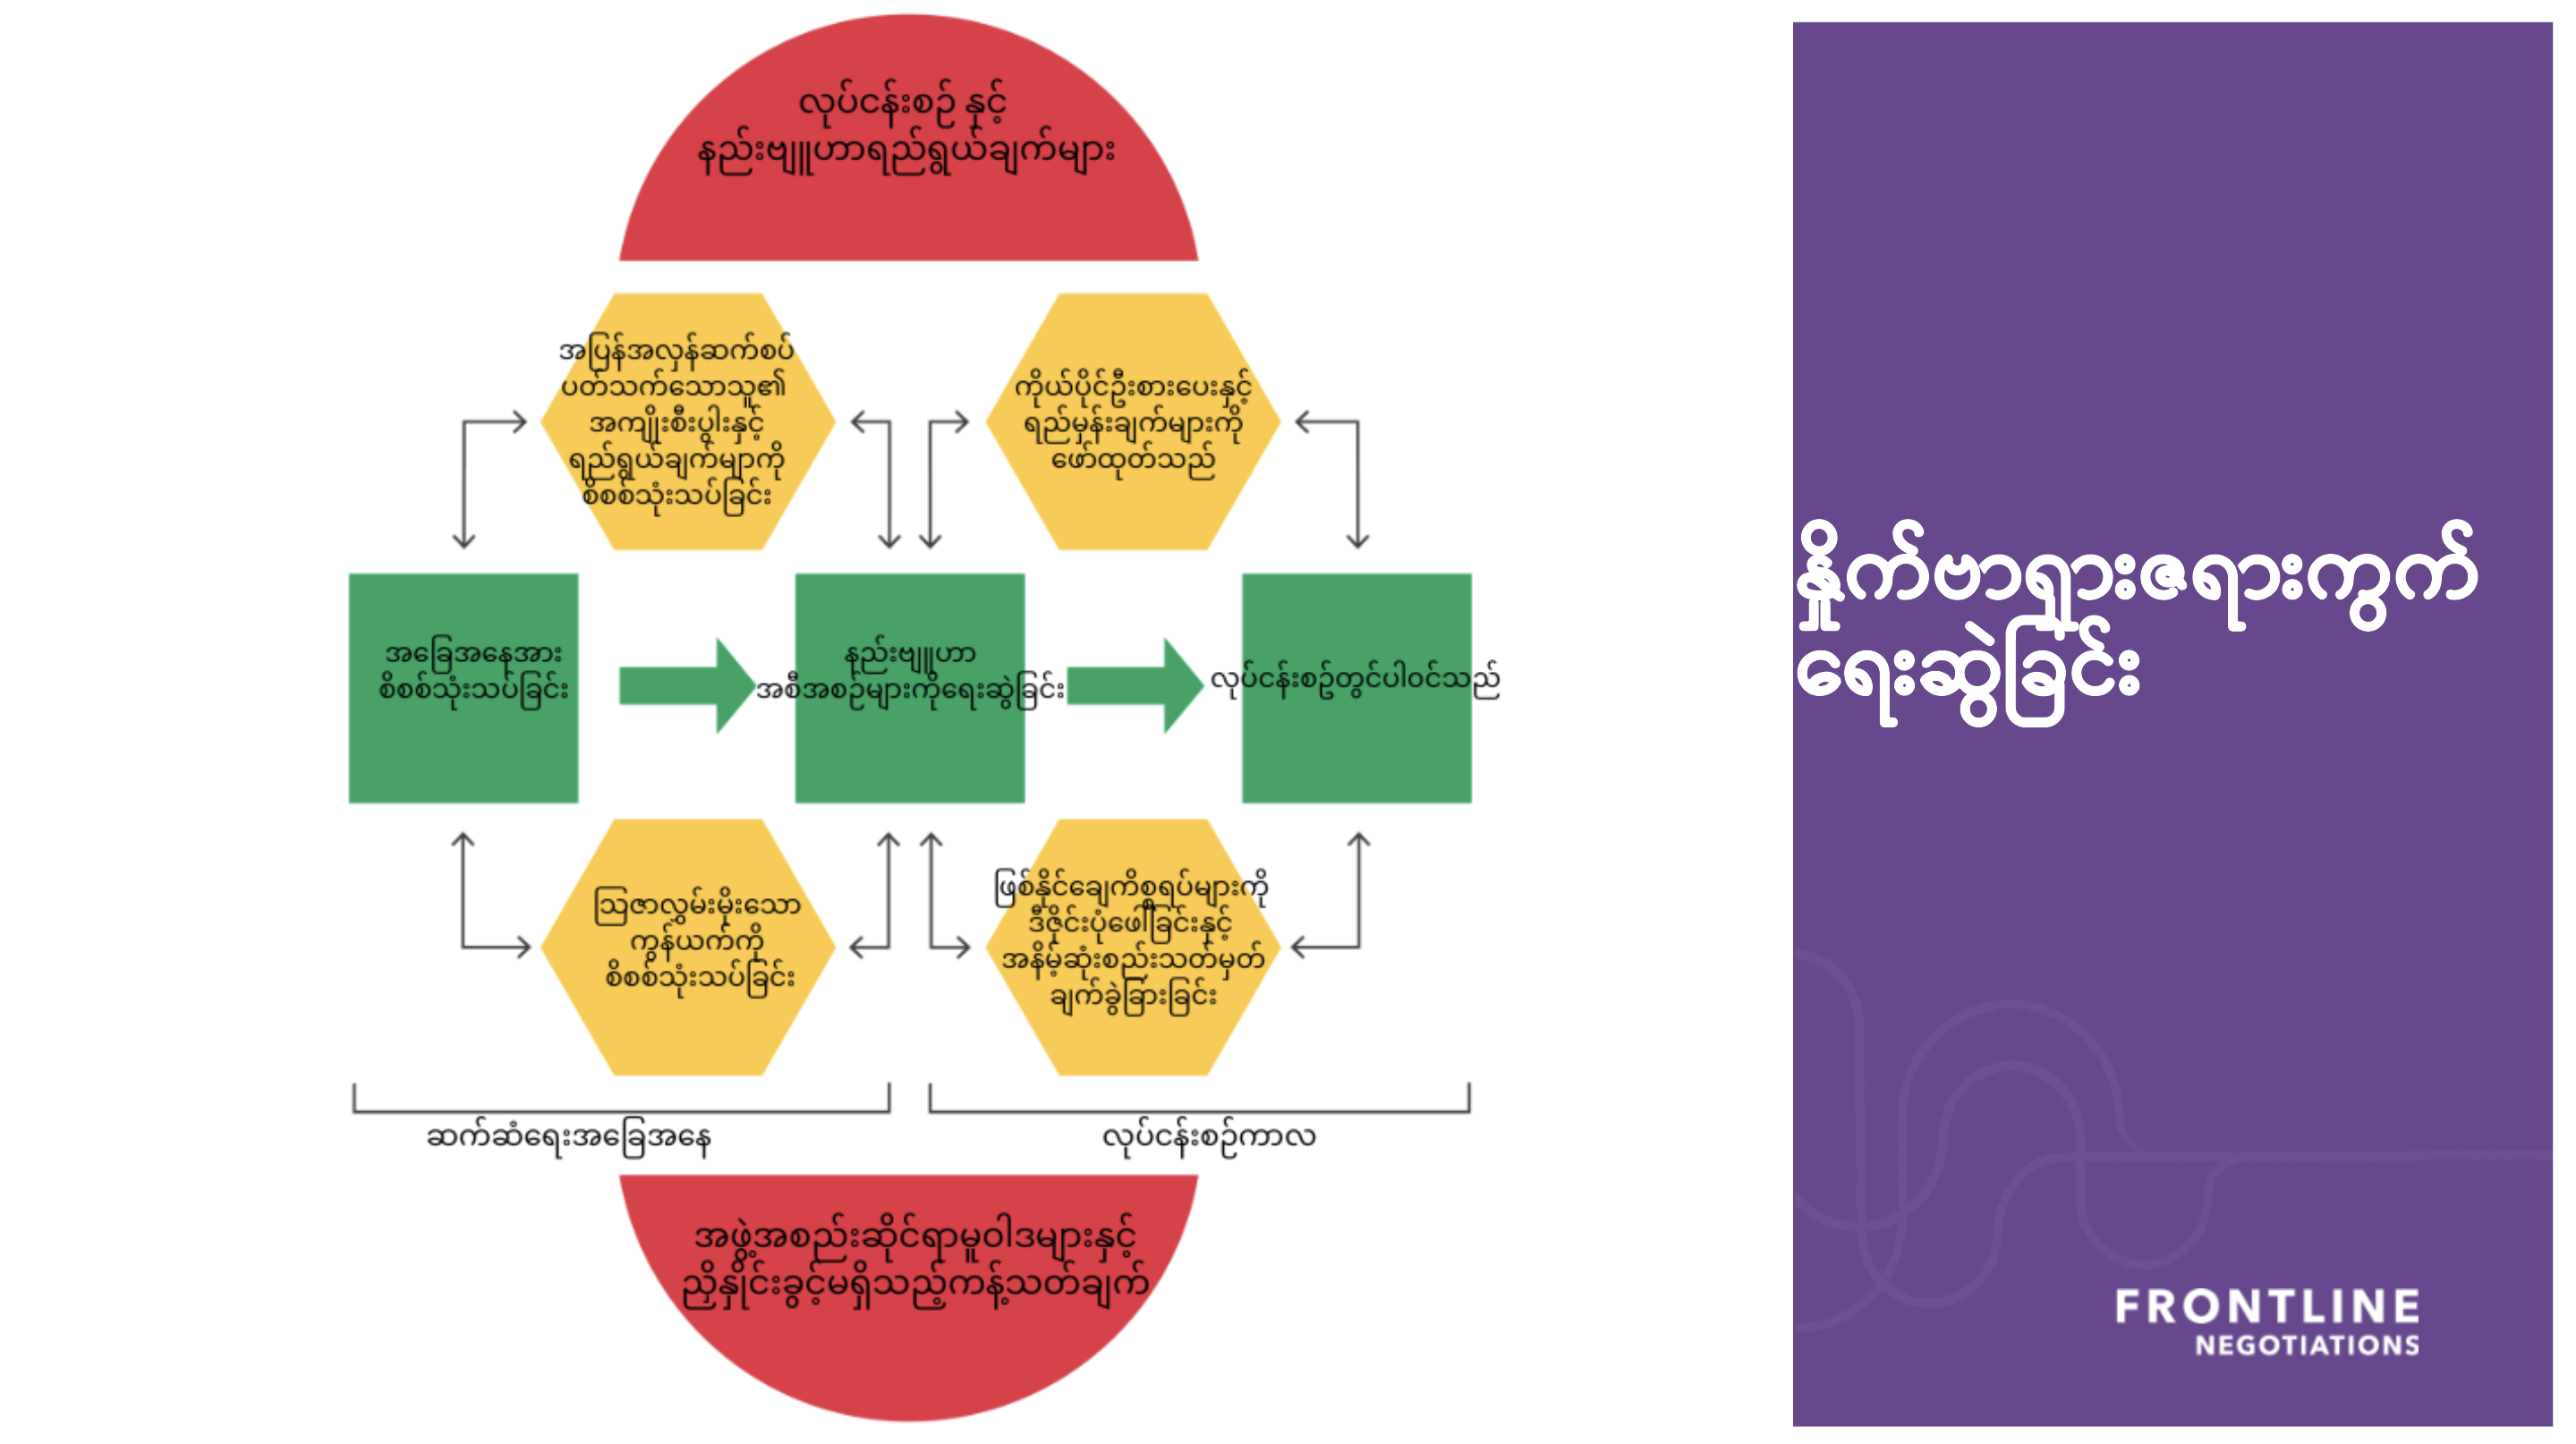 Los trabajadores humanitarios ayudan a sus compañeros a desarrollar su competencias de negociación traduciendo al birmano un diagrama que explica las distintas fases de un proceso de negociación.